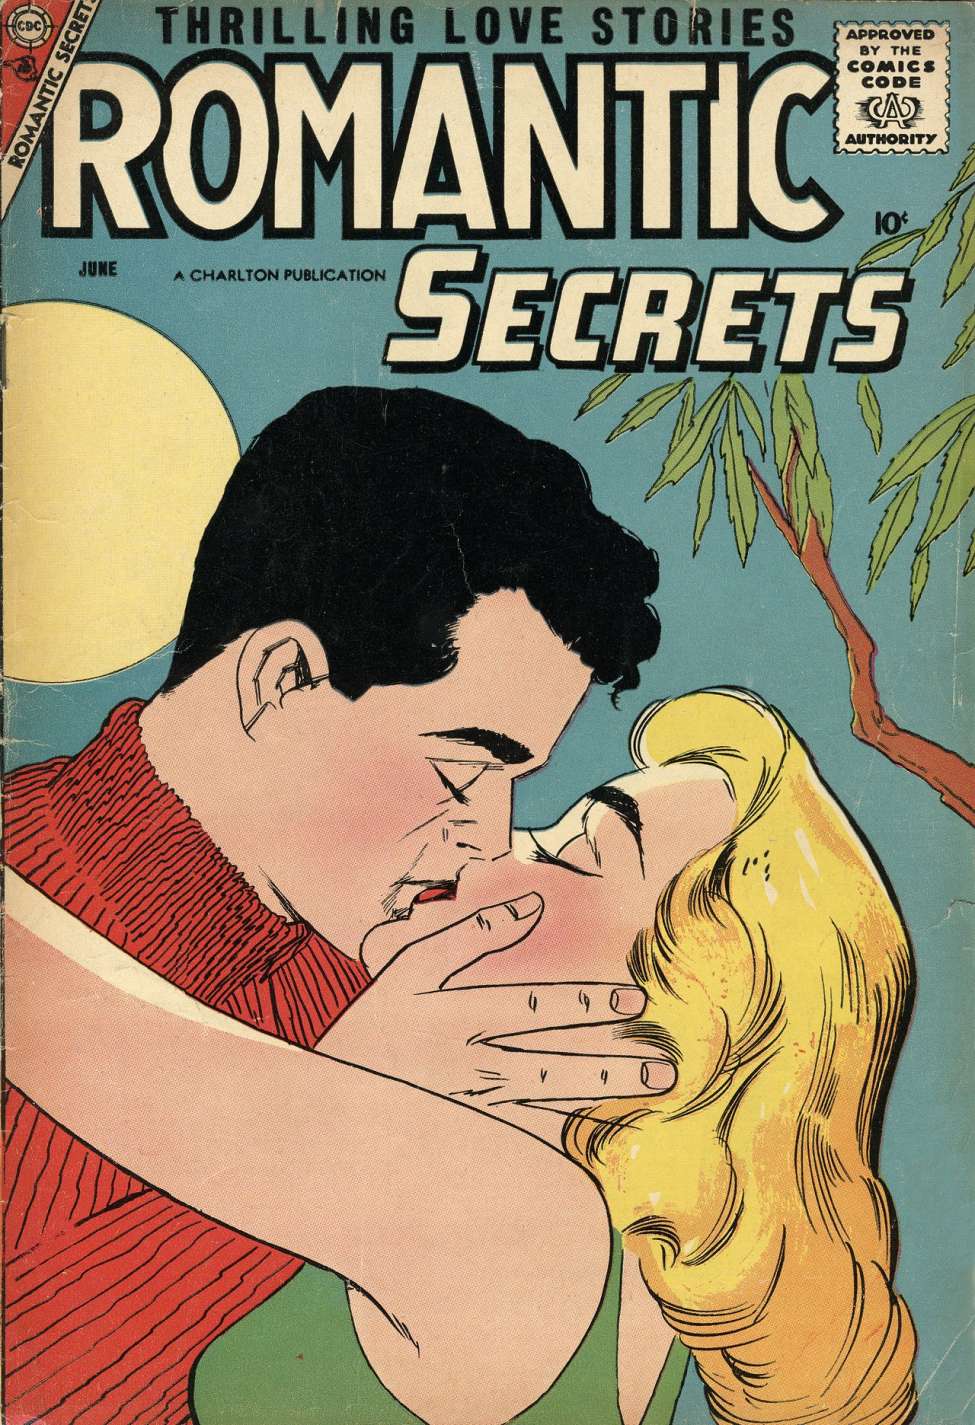 Book Cover For Romantic Secrets 16